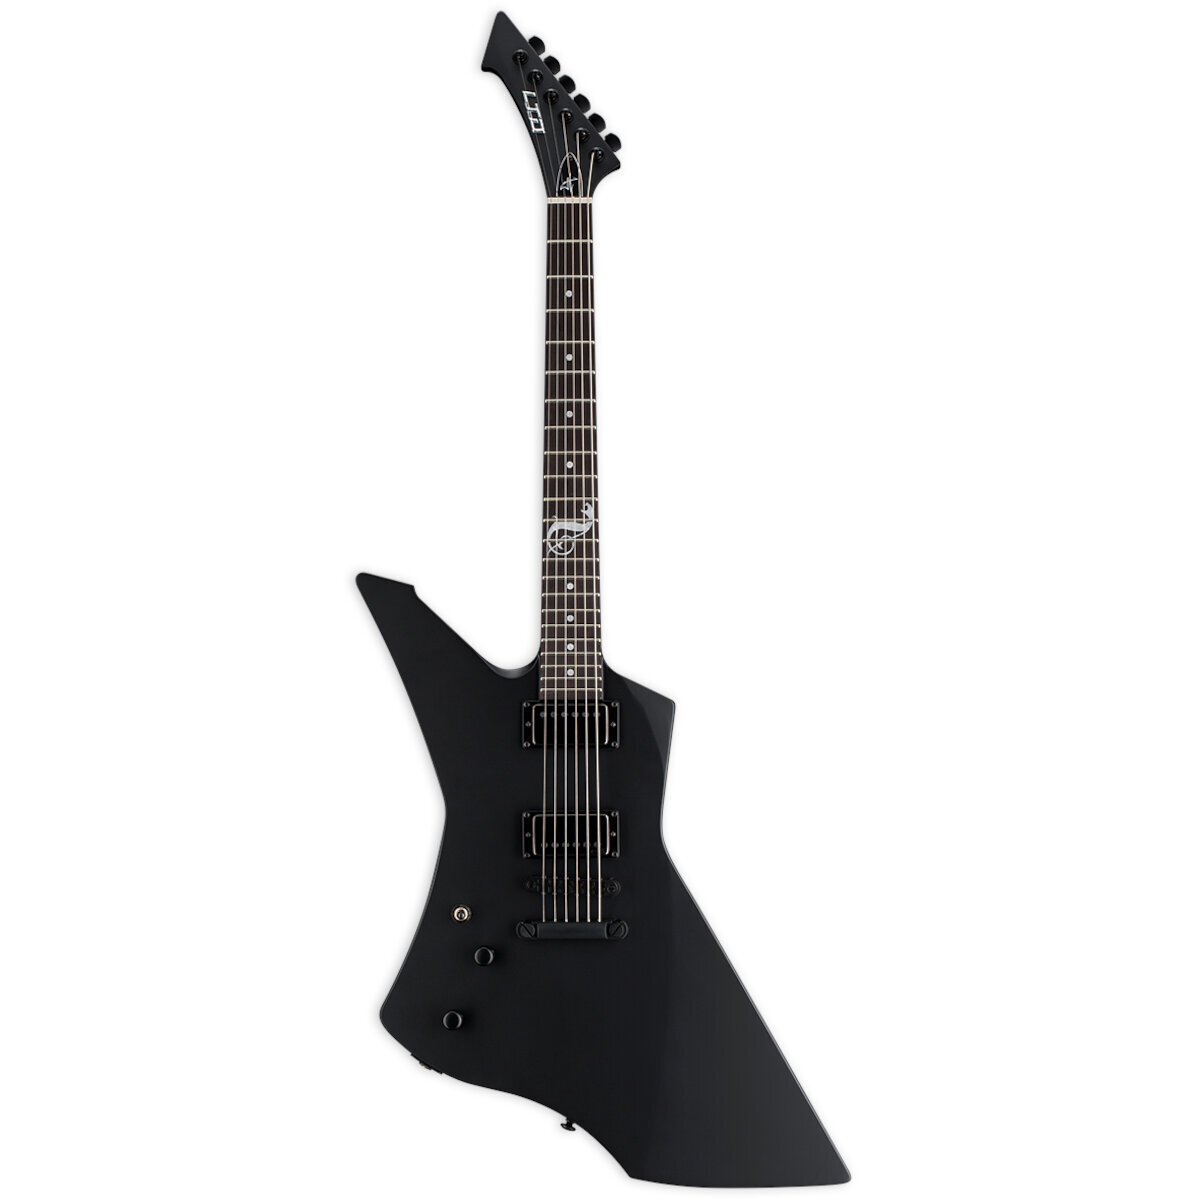 ESP LTD. Snakebyte LH Black Satin James Hetfield Signature linkshandige elektrische gitaar met koffer